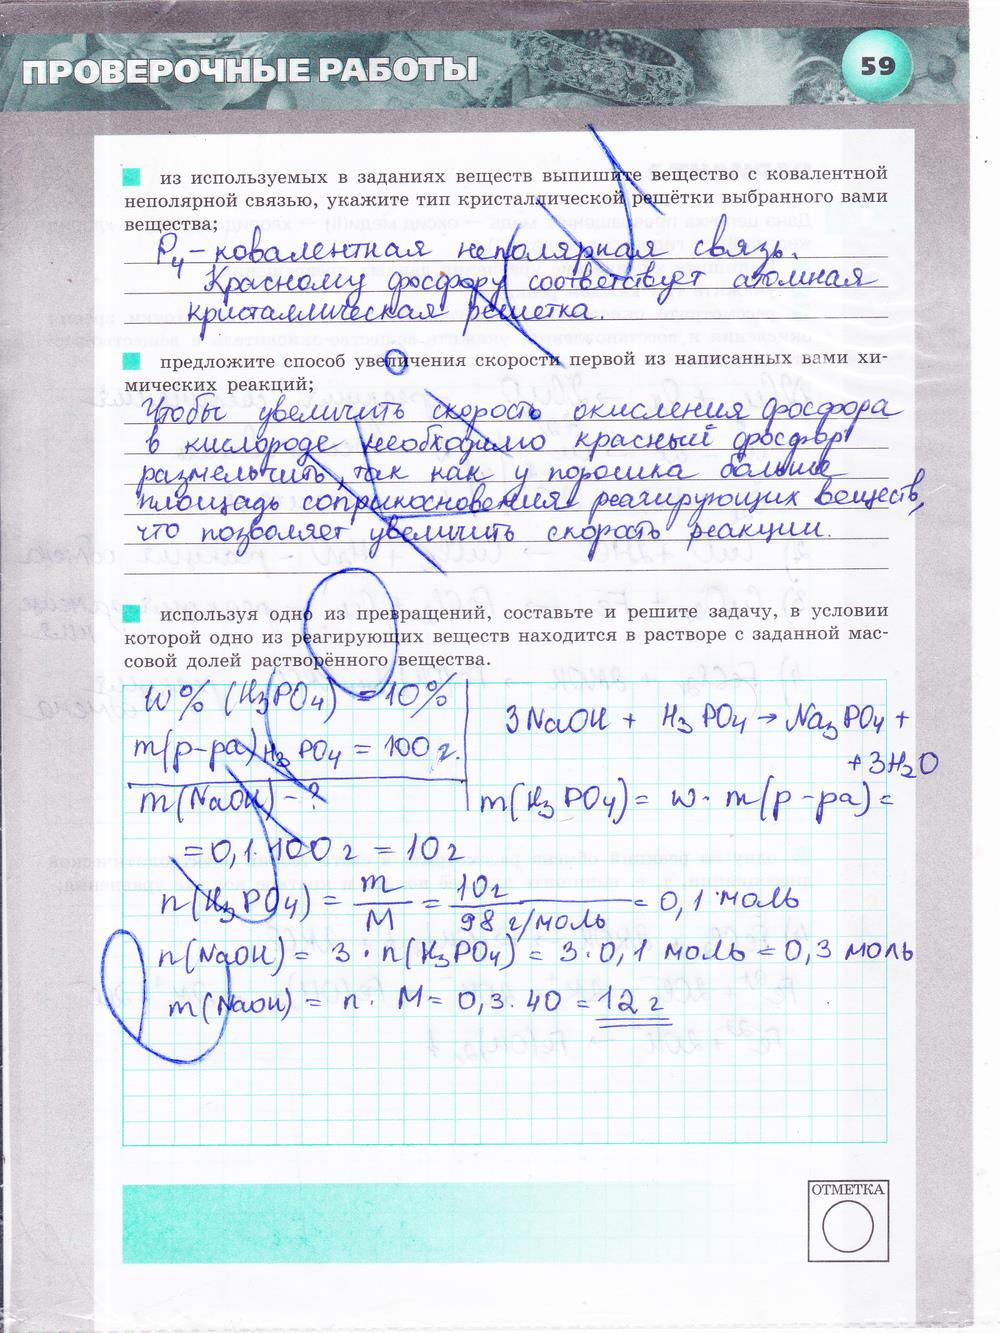 гдз 9 класс тетрадь-экзаменатор страница 59 химия Бобылева, Бирюлина